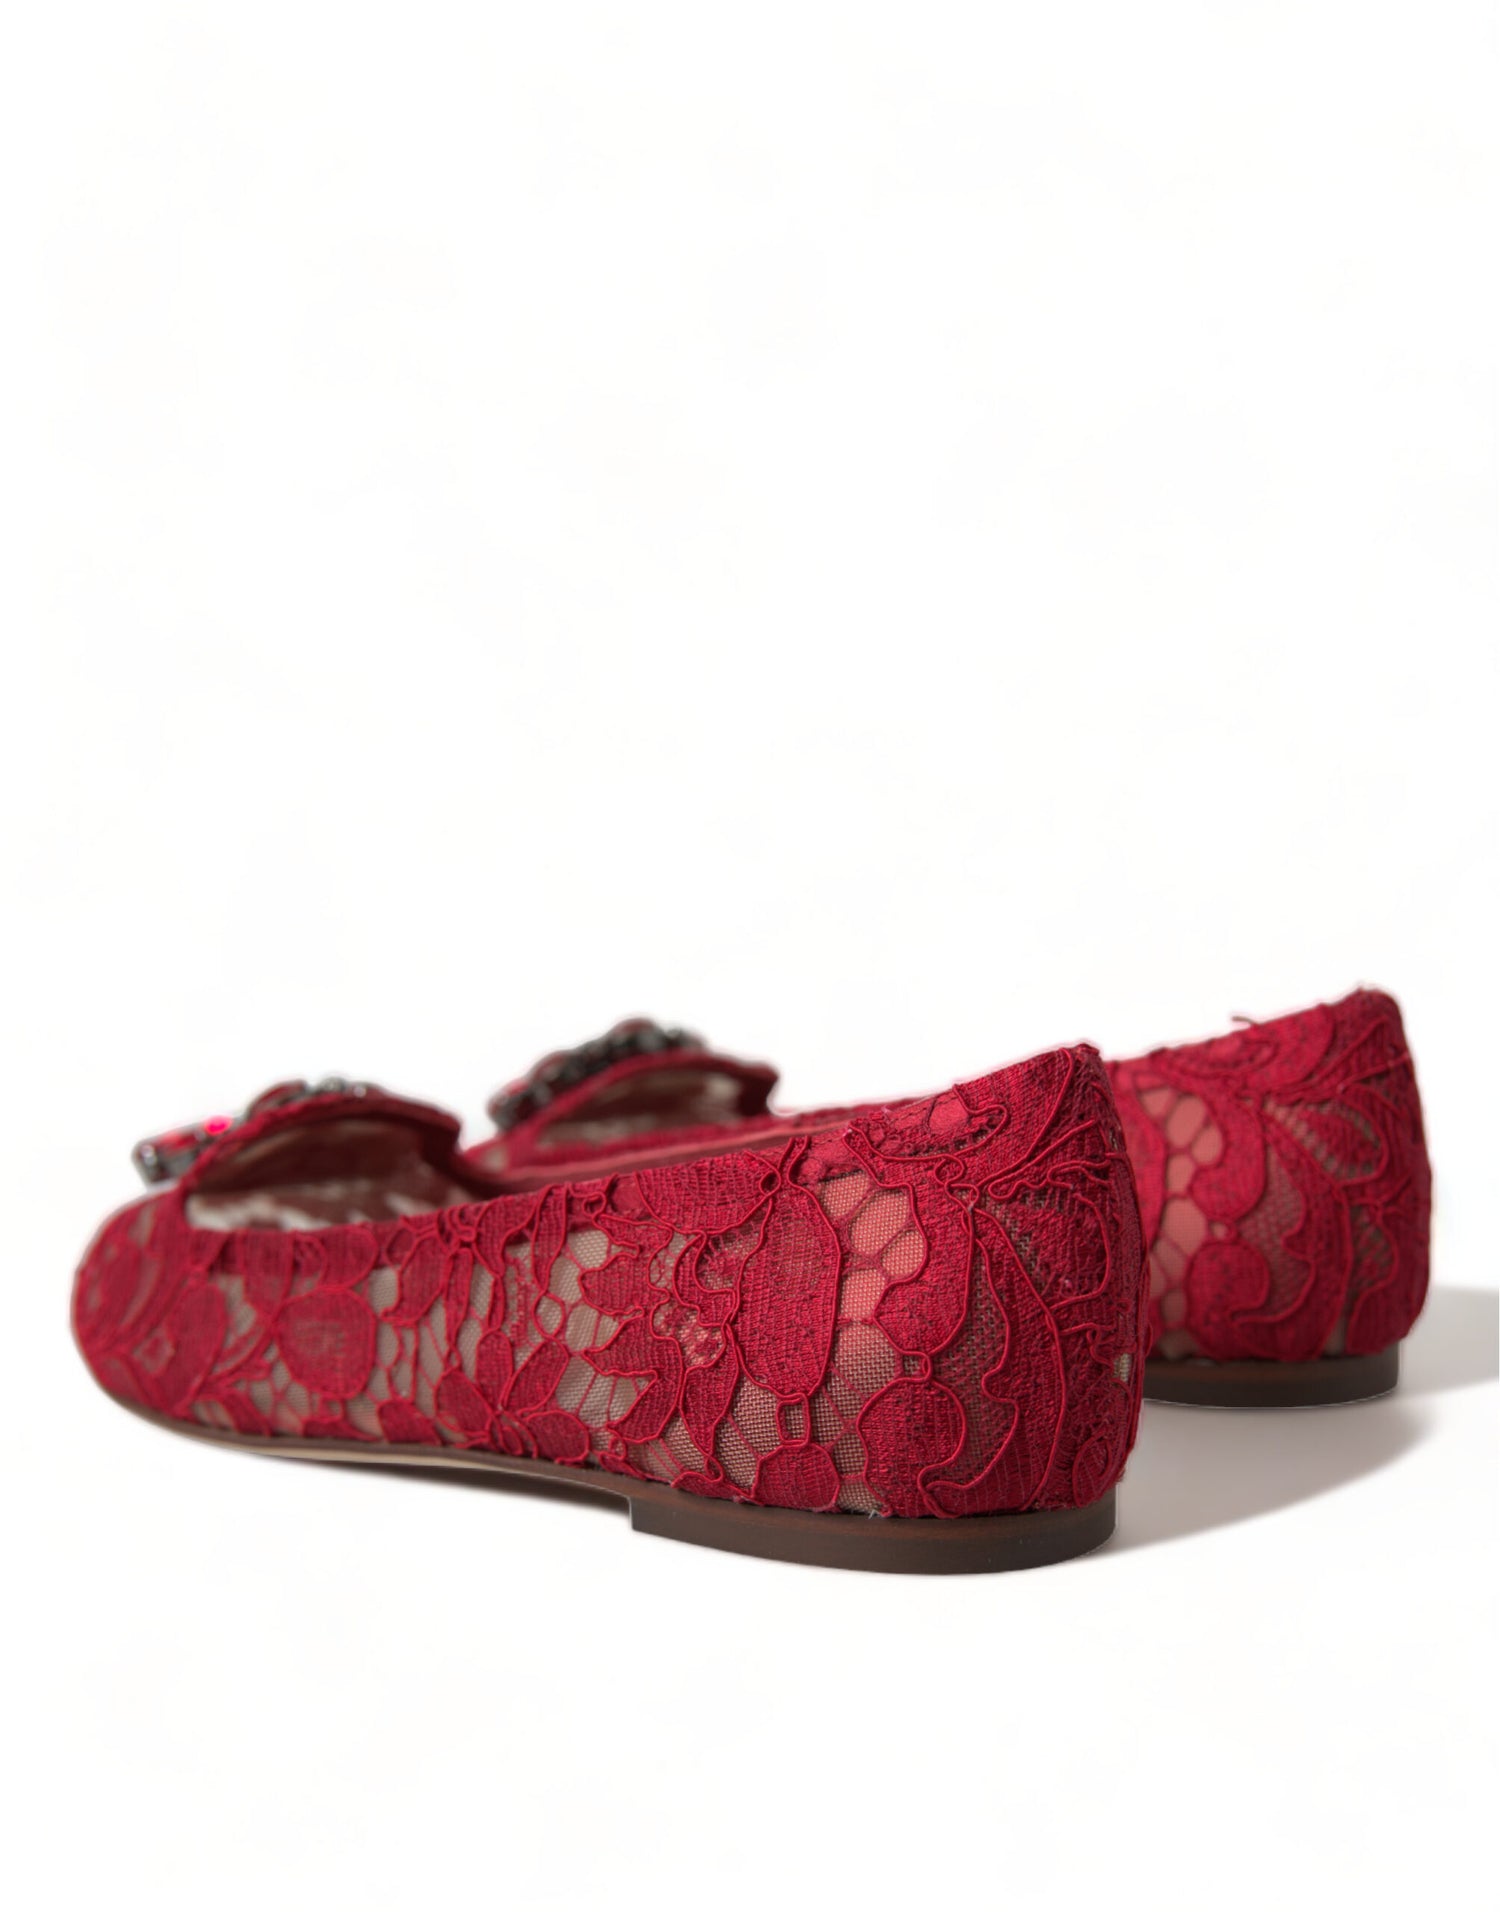 Dolce & Gabbana Red Vally Taormina Lace Crystals Flats Shoes - DEA STILOSA MILANO